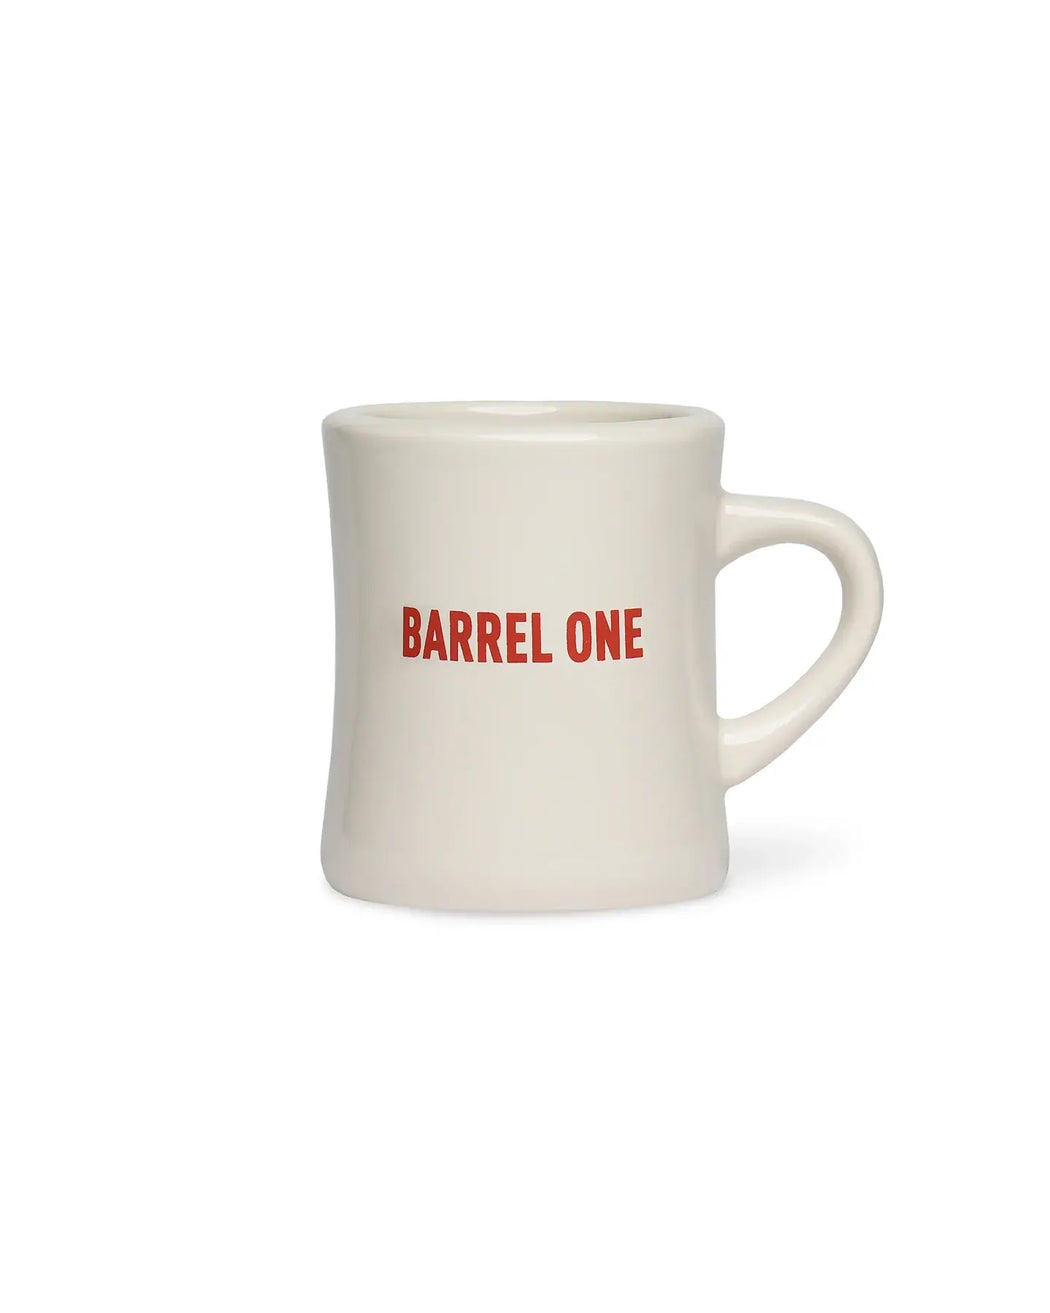 Barrel One Diner Mug